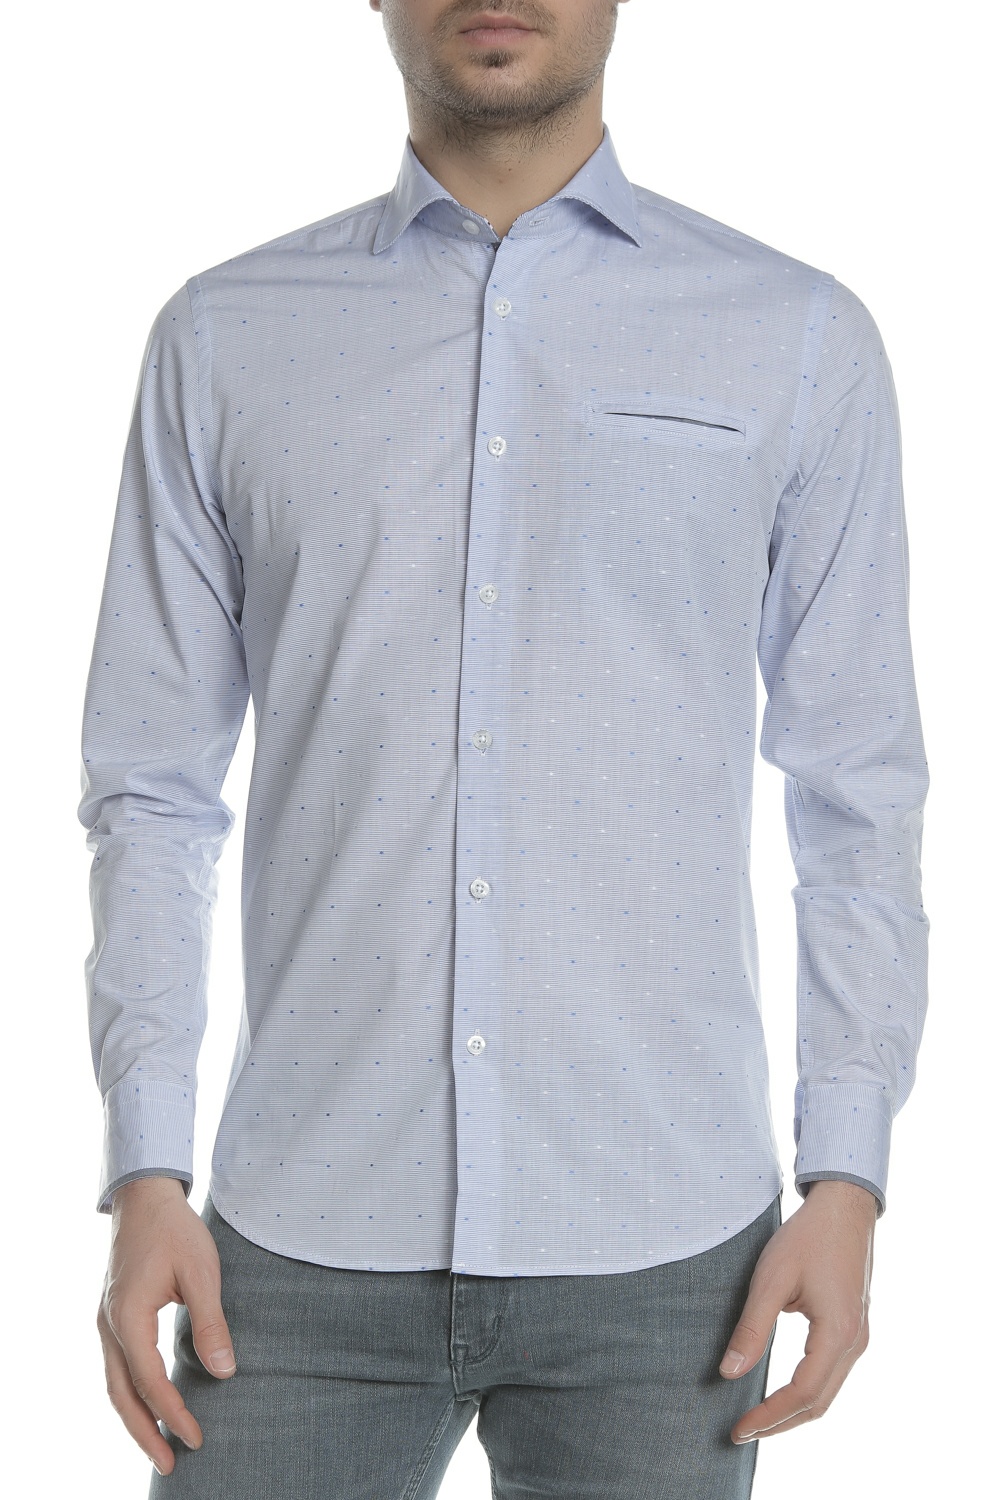 Ανδρικά/Ρούχα/Πουκάμισα/Μακρυμάνικα SSEINSE - Ανδρικό μακρυμάνικο πουκάμισο SSEINSE γαλάζιο